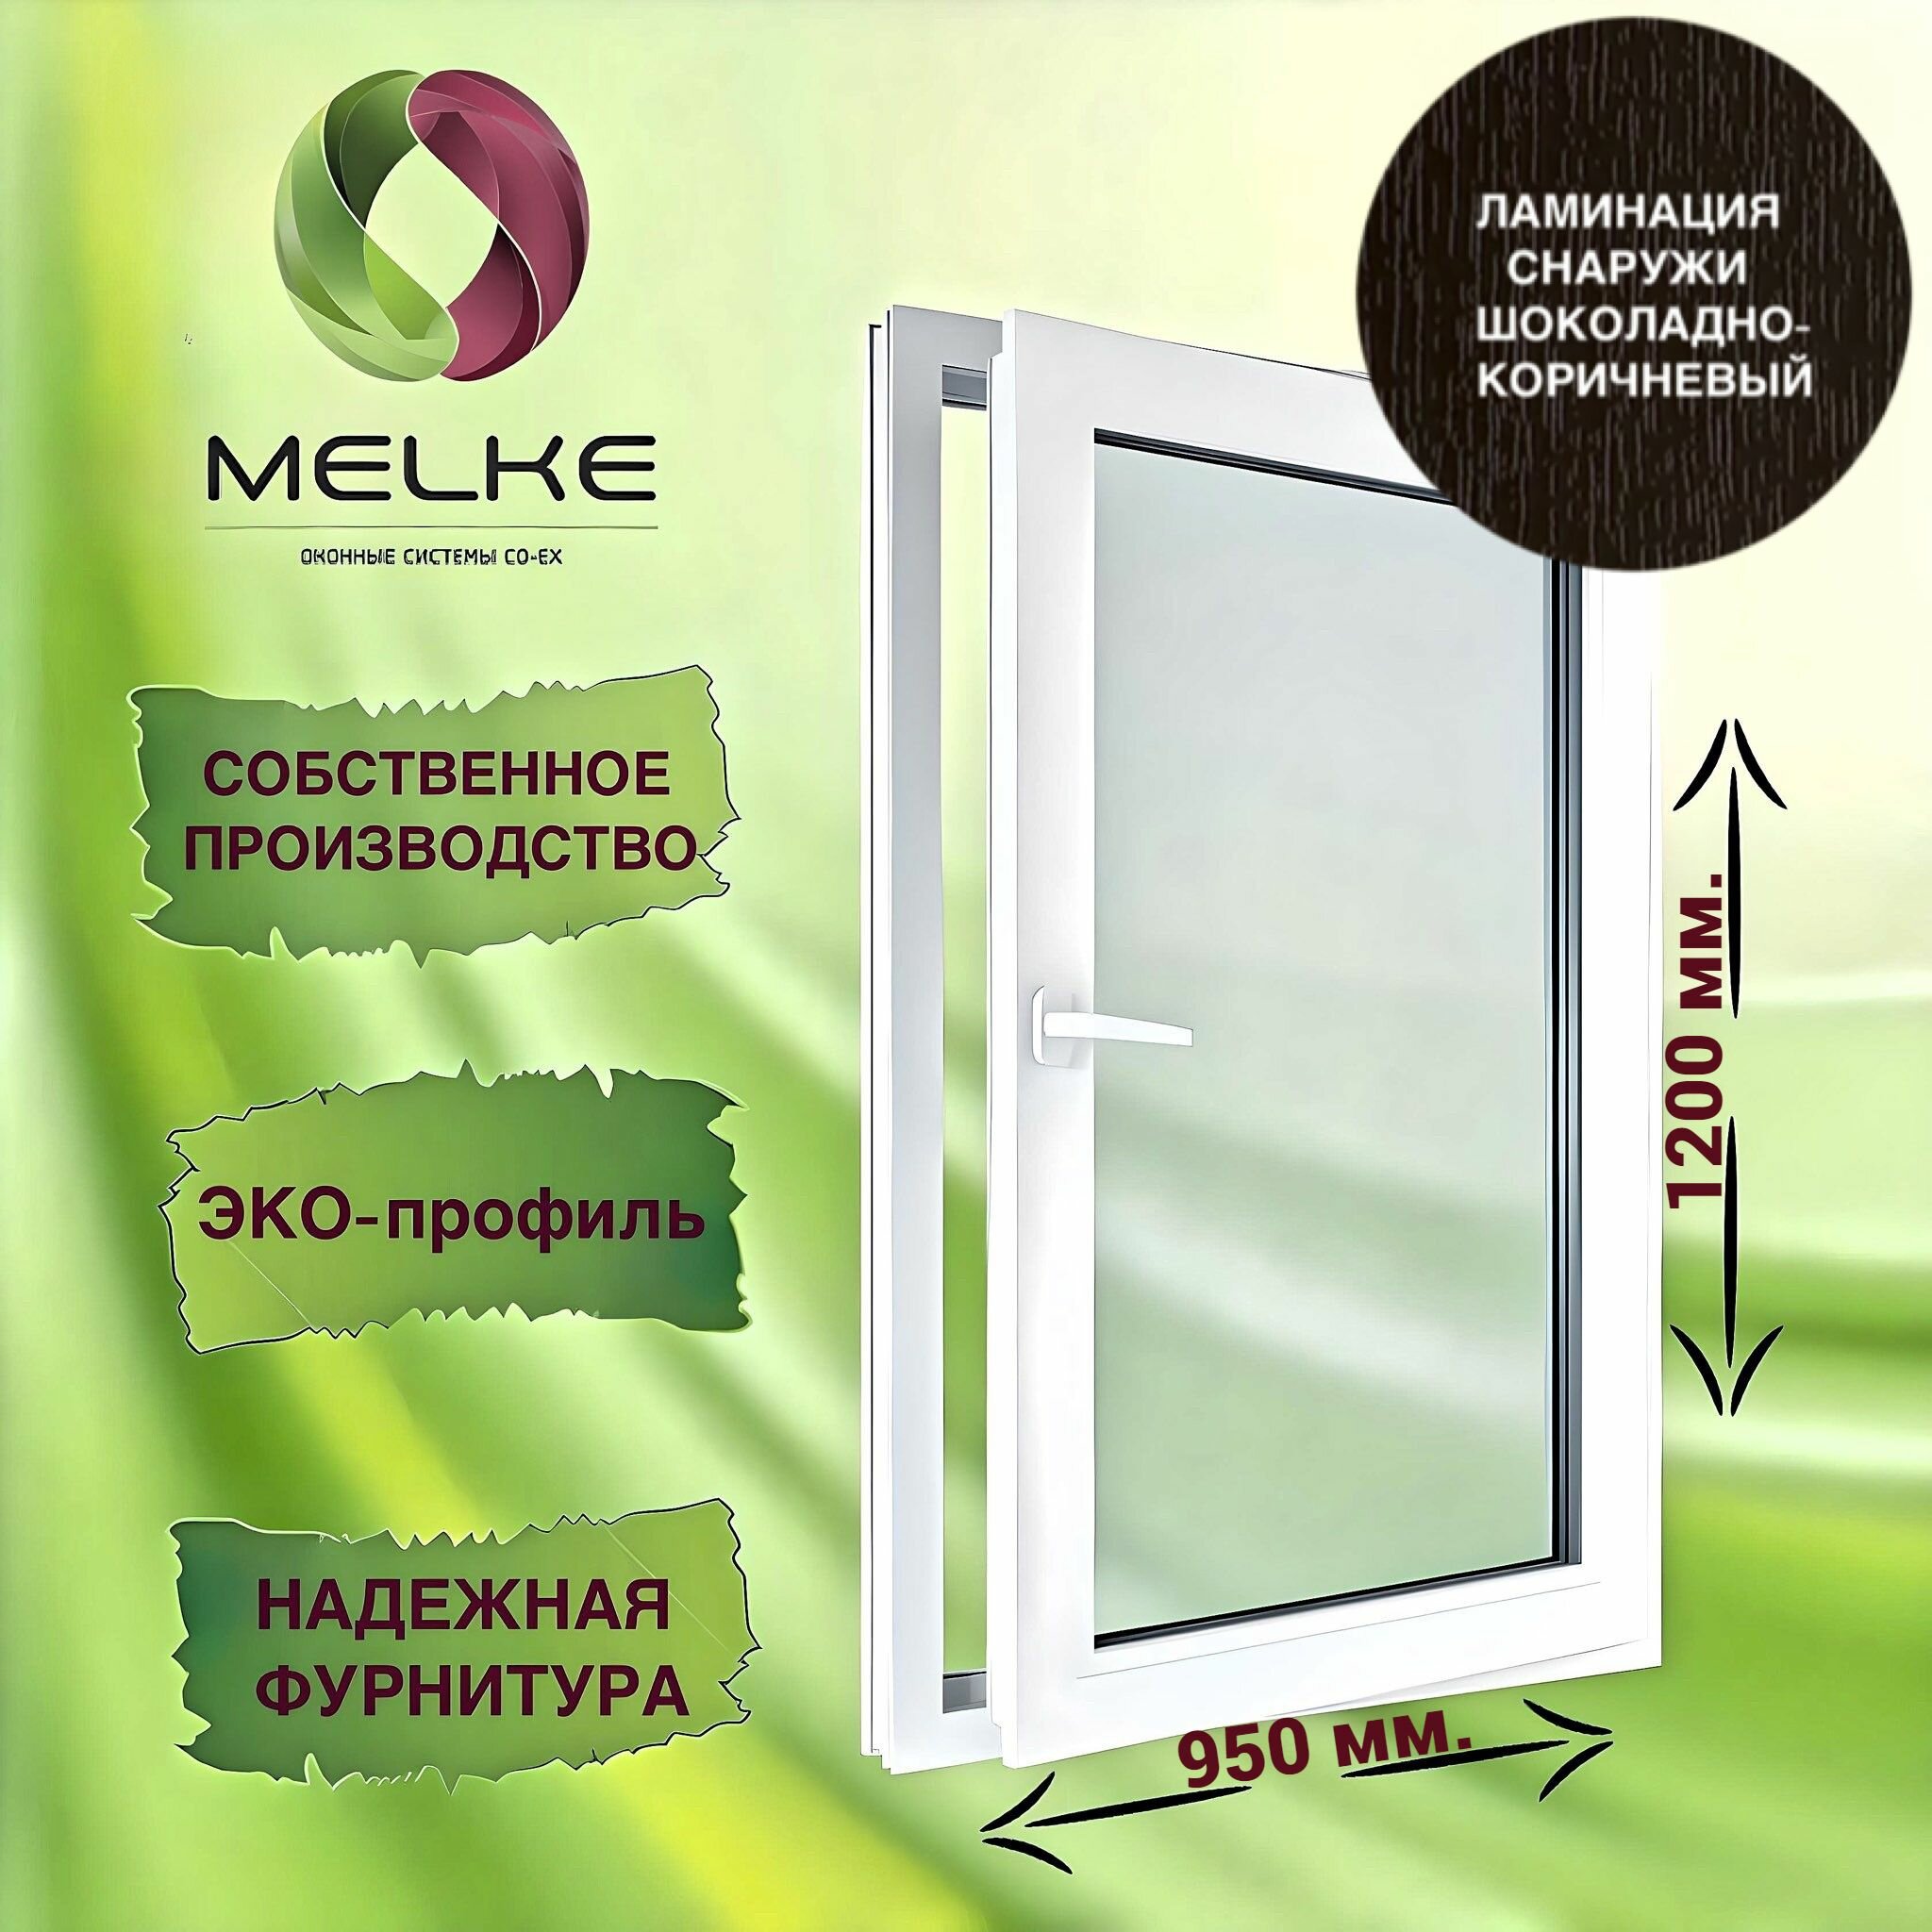 Окно 1200 х 950 мм, Melke 60 (Фурнитура FUTURUSS), правое одностворчатое, поворотно-откидное, цвет внешней ламинации Шоколадно-коричневый, 2-х камерный стеклопакет, 3 стекла